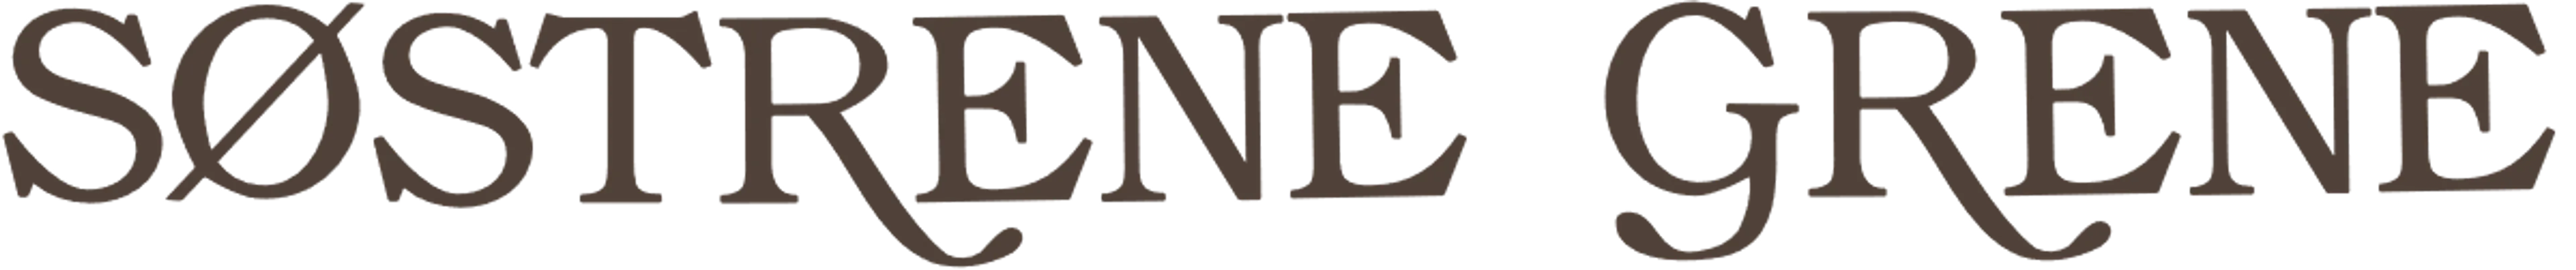 SØSTRENE GRENE logo